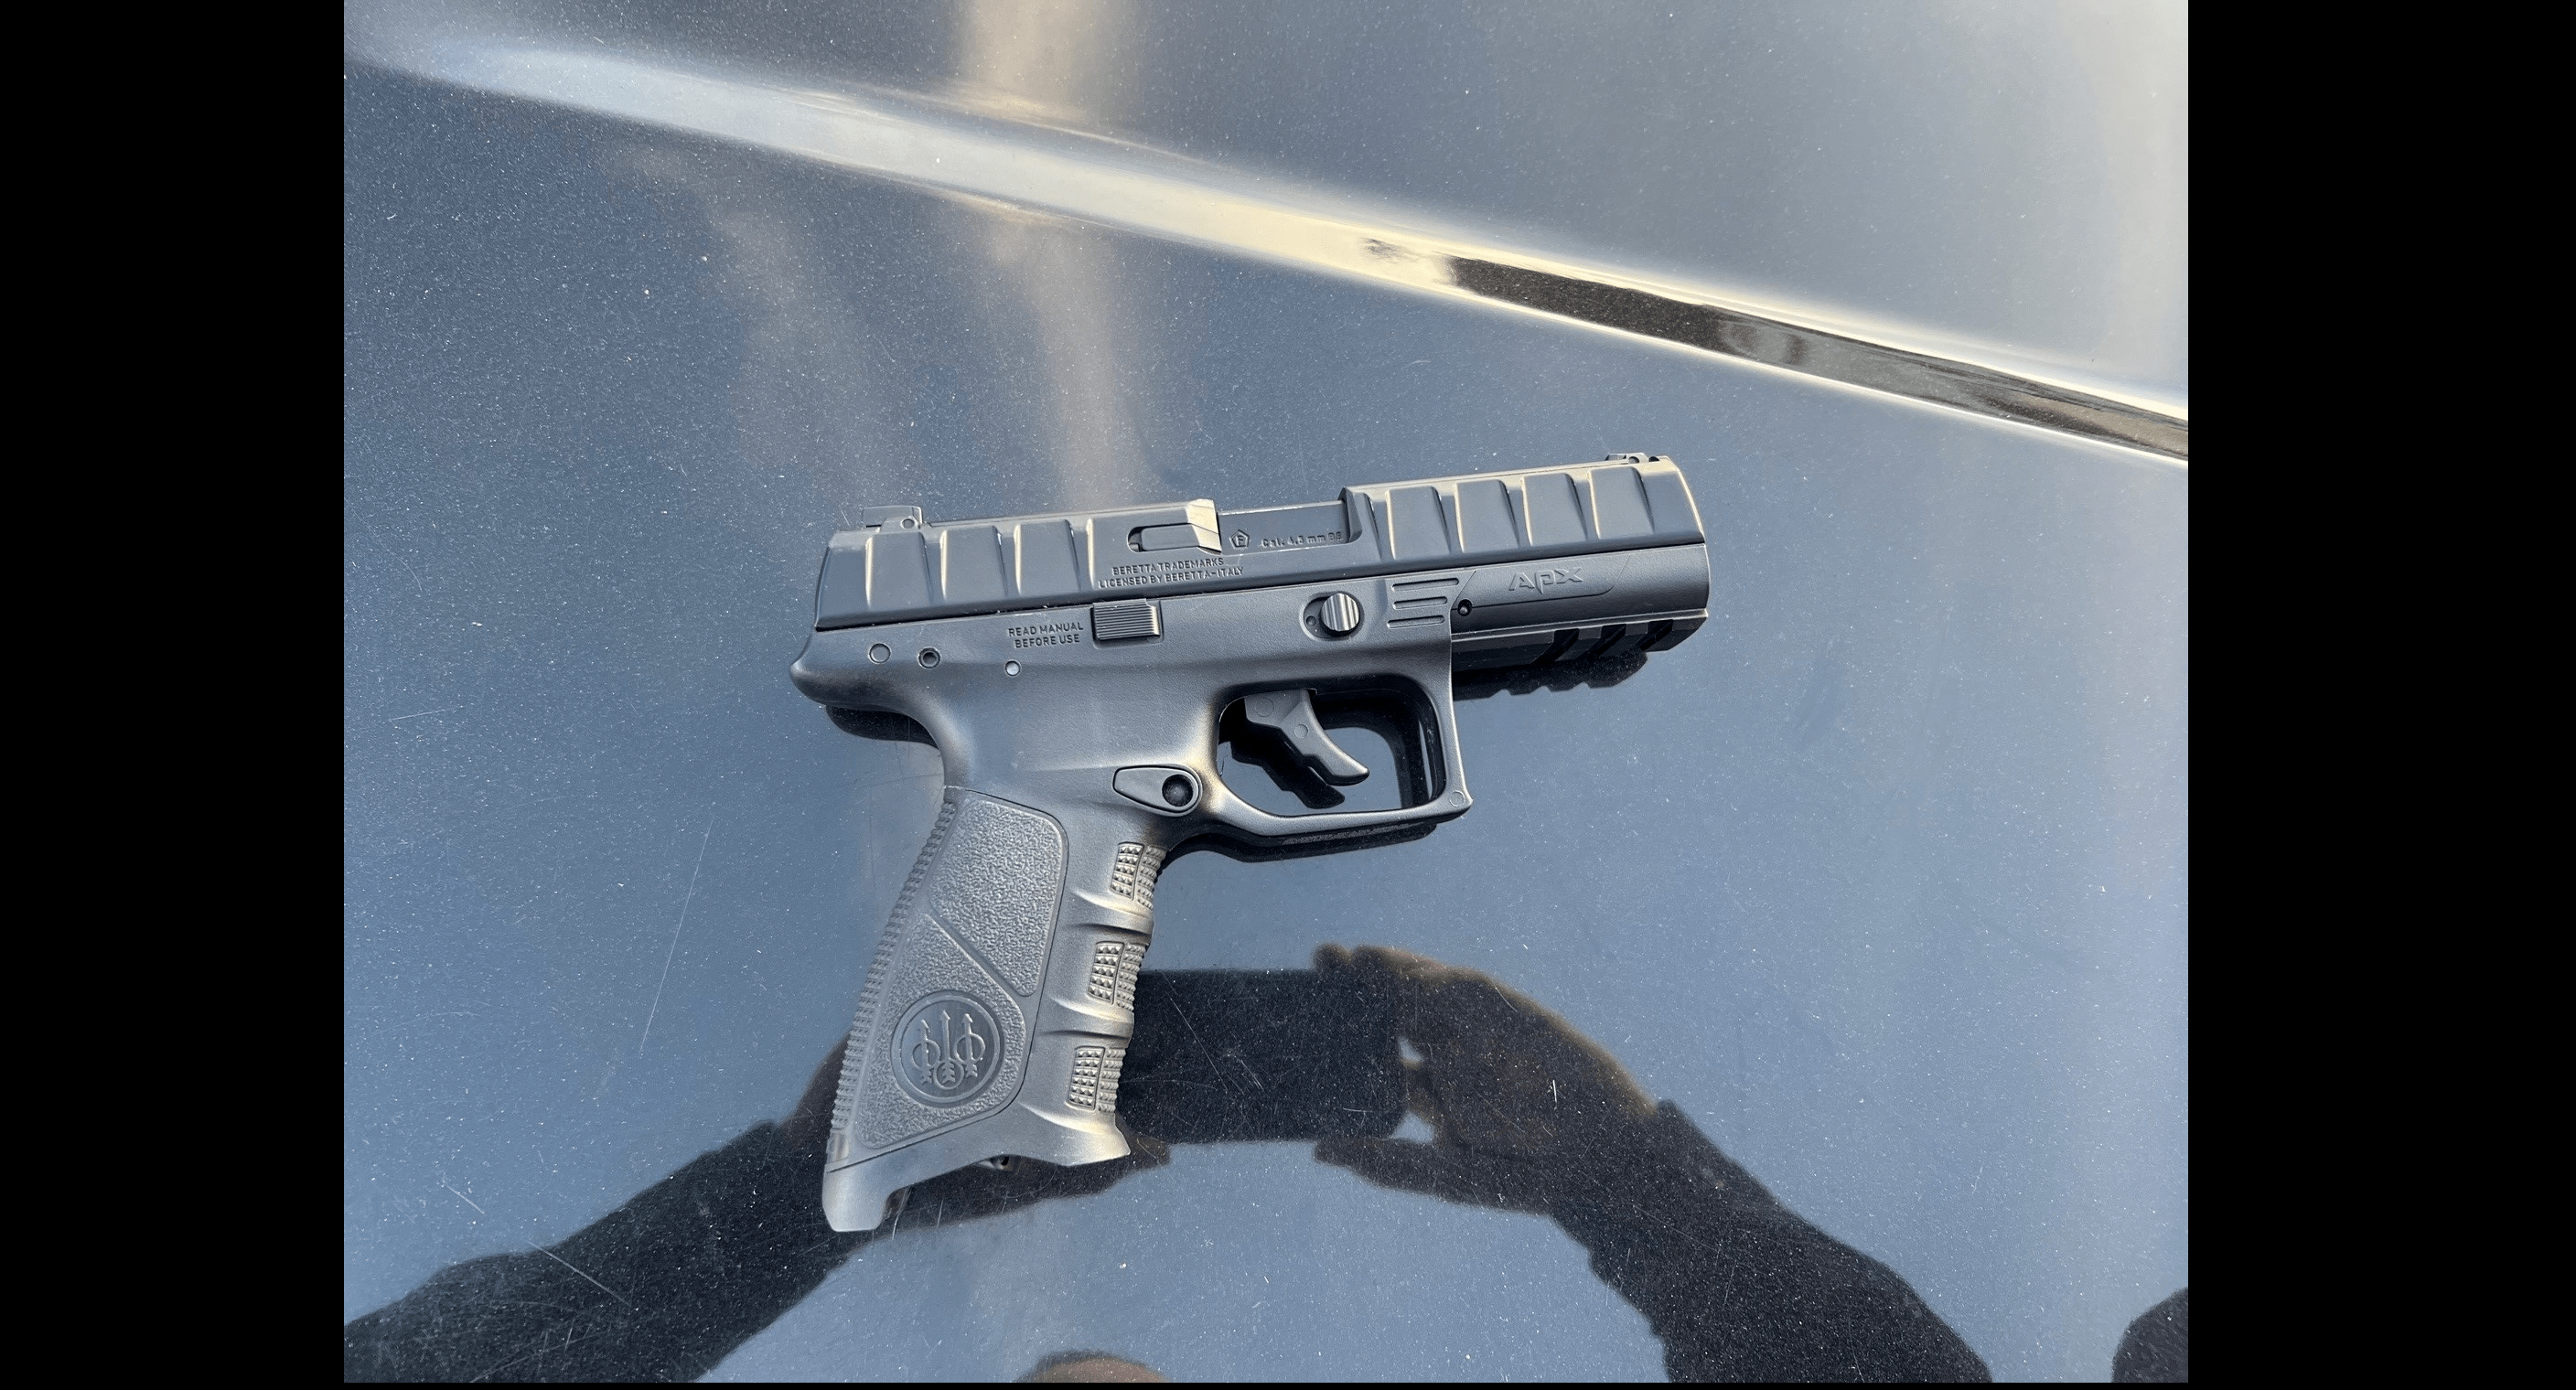 bb-gun-confiscated-from-teenager-in-petaluma-petaluma-police